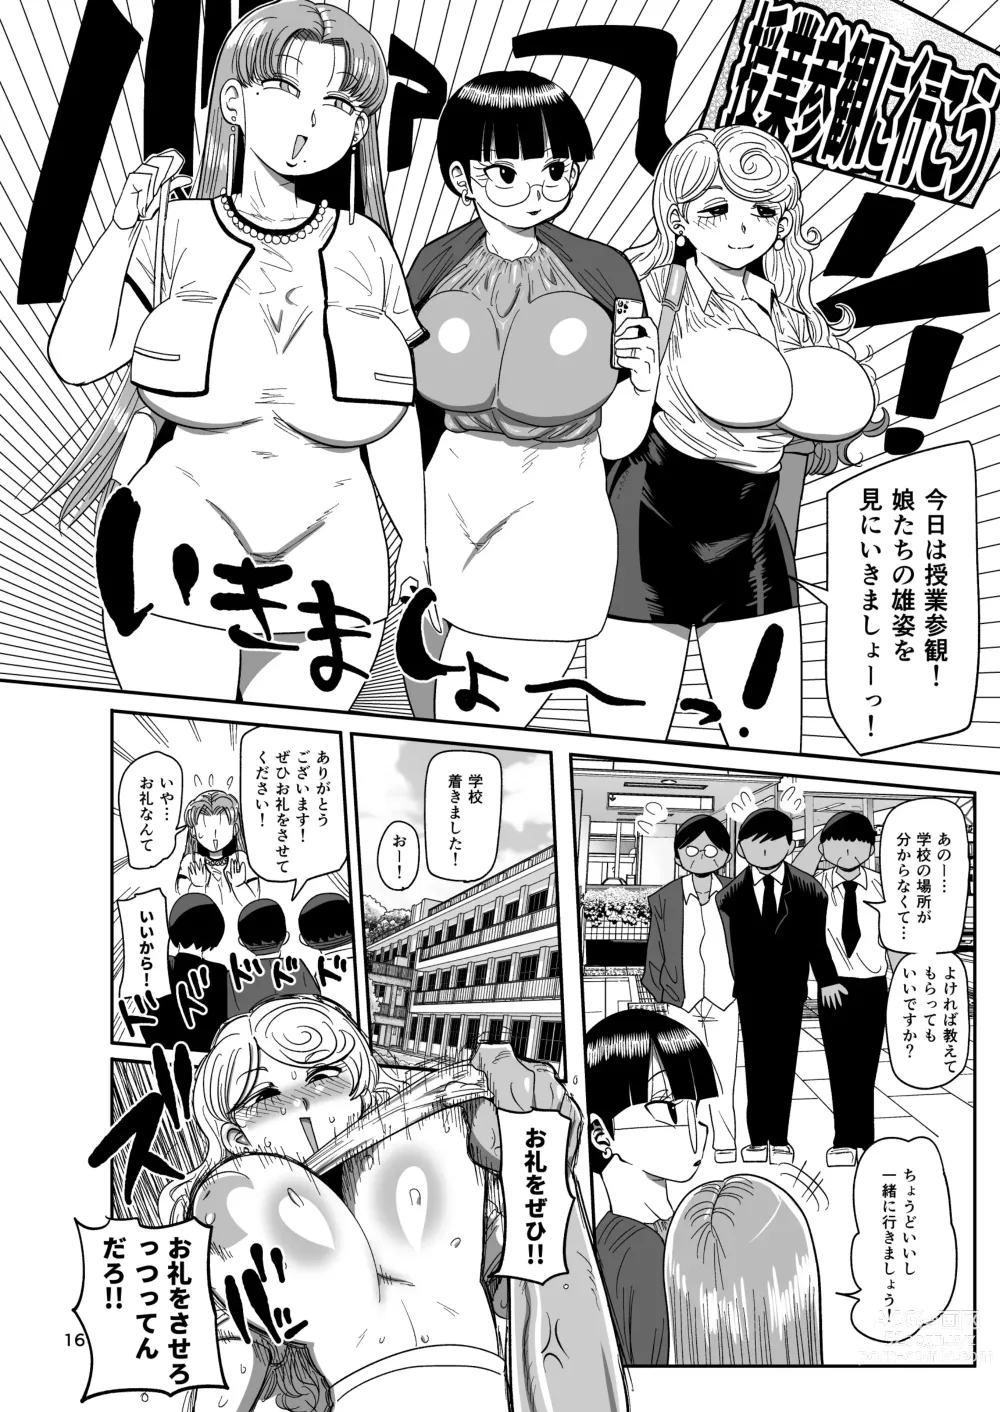 Page 15 of doujinshi Nandemo Chousa Mama Kuma Shizue wa Teiko ga Dekinai